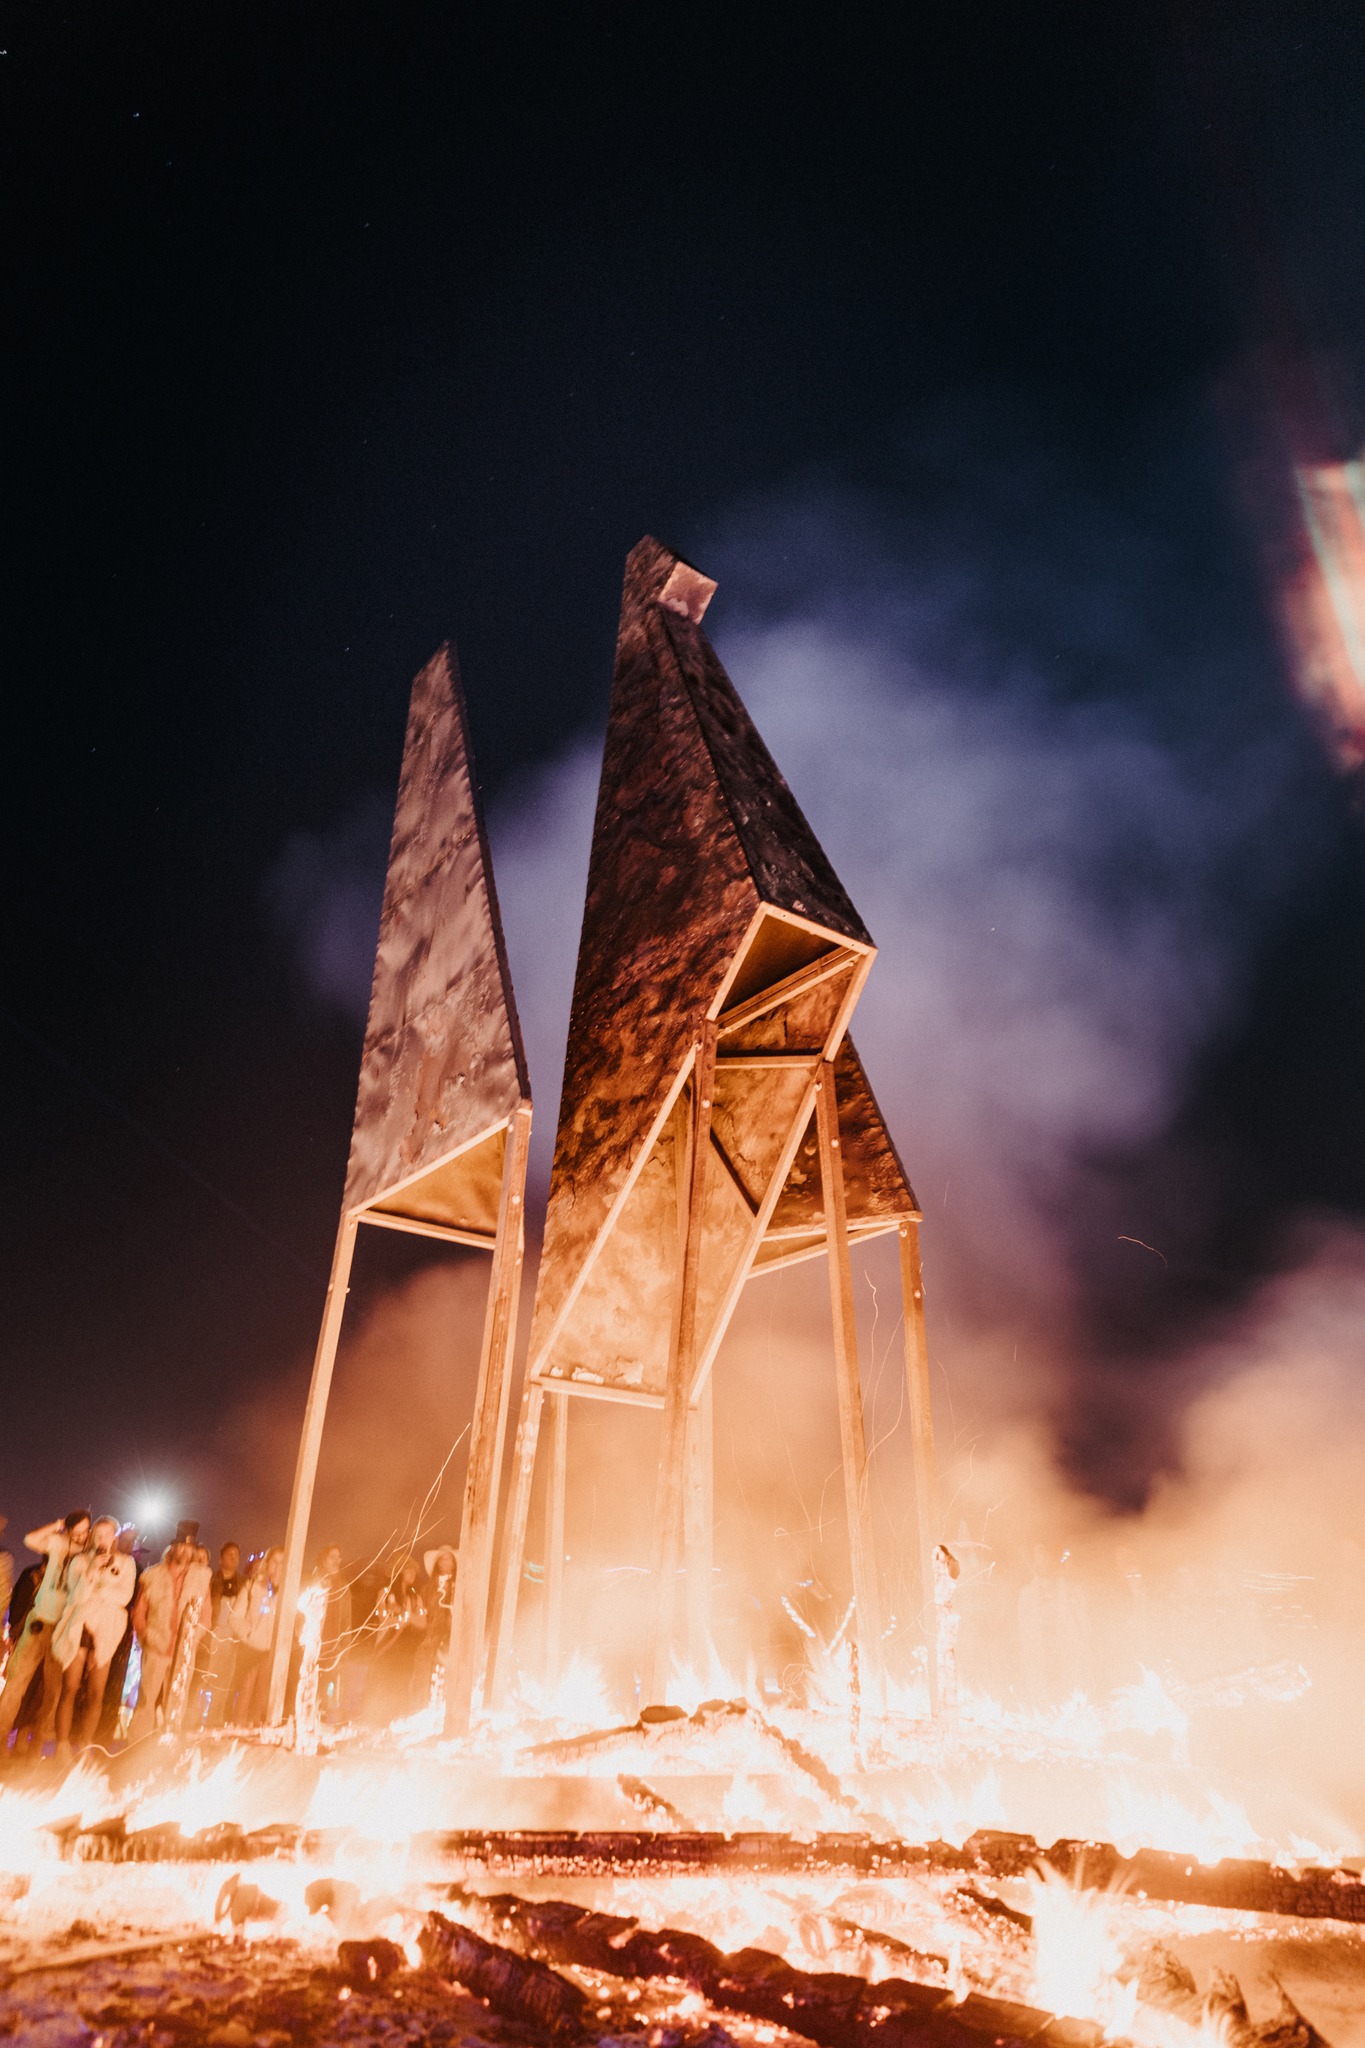 Народився Фенікс: Україна на Burning Man влаштувала потужне вогняне шоу (фото, відео) — фото